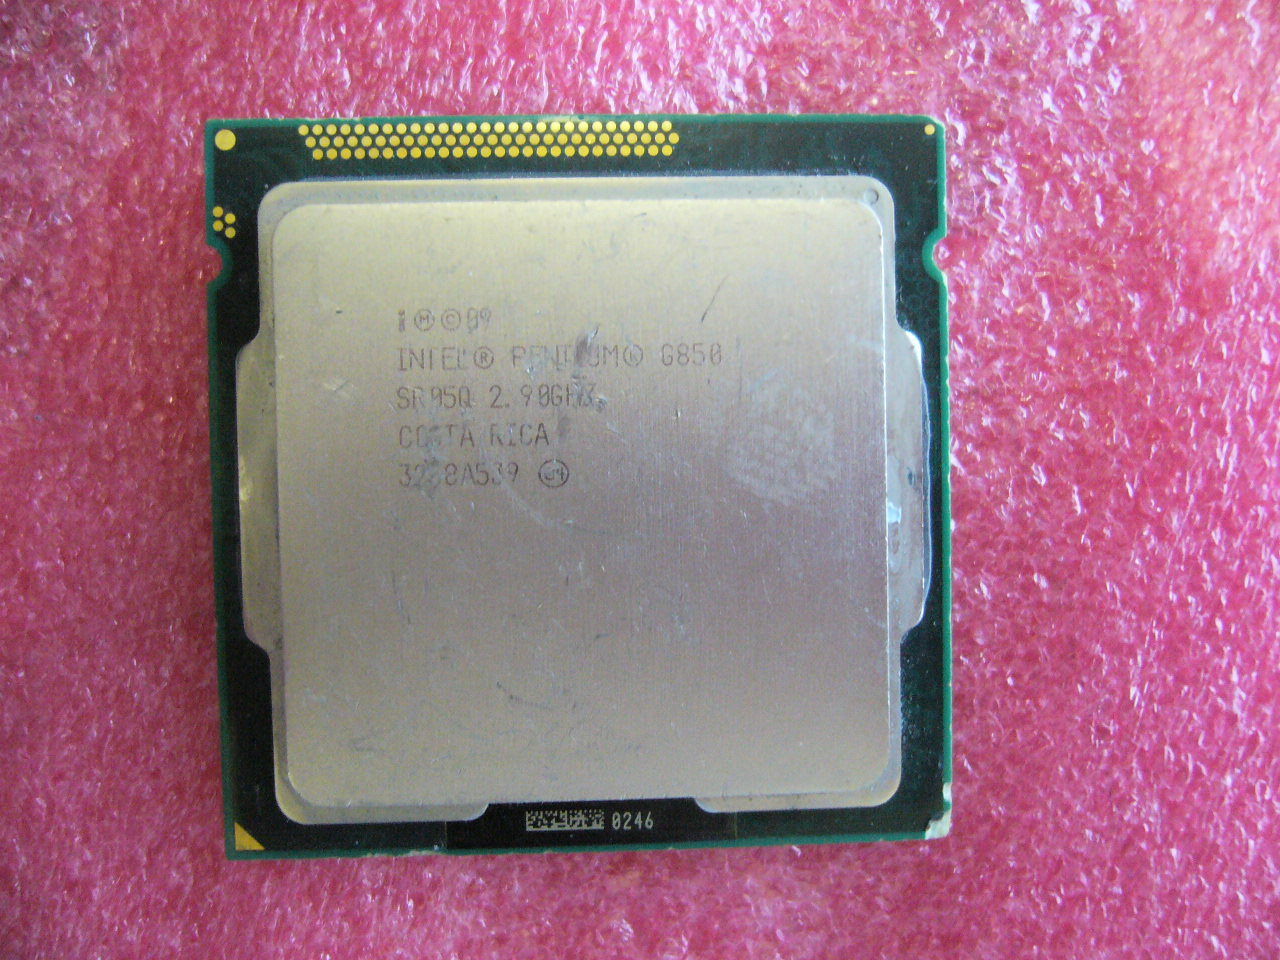 QTY 1x INTEL CPU G850 2.9GHZ/3MB LGA1155 SR05Q